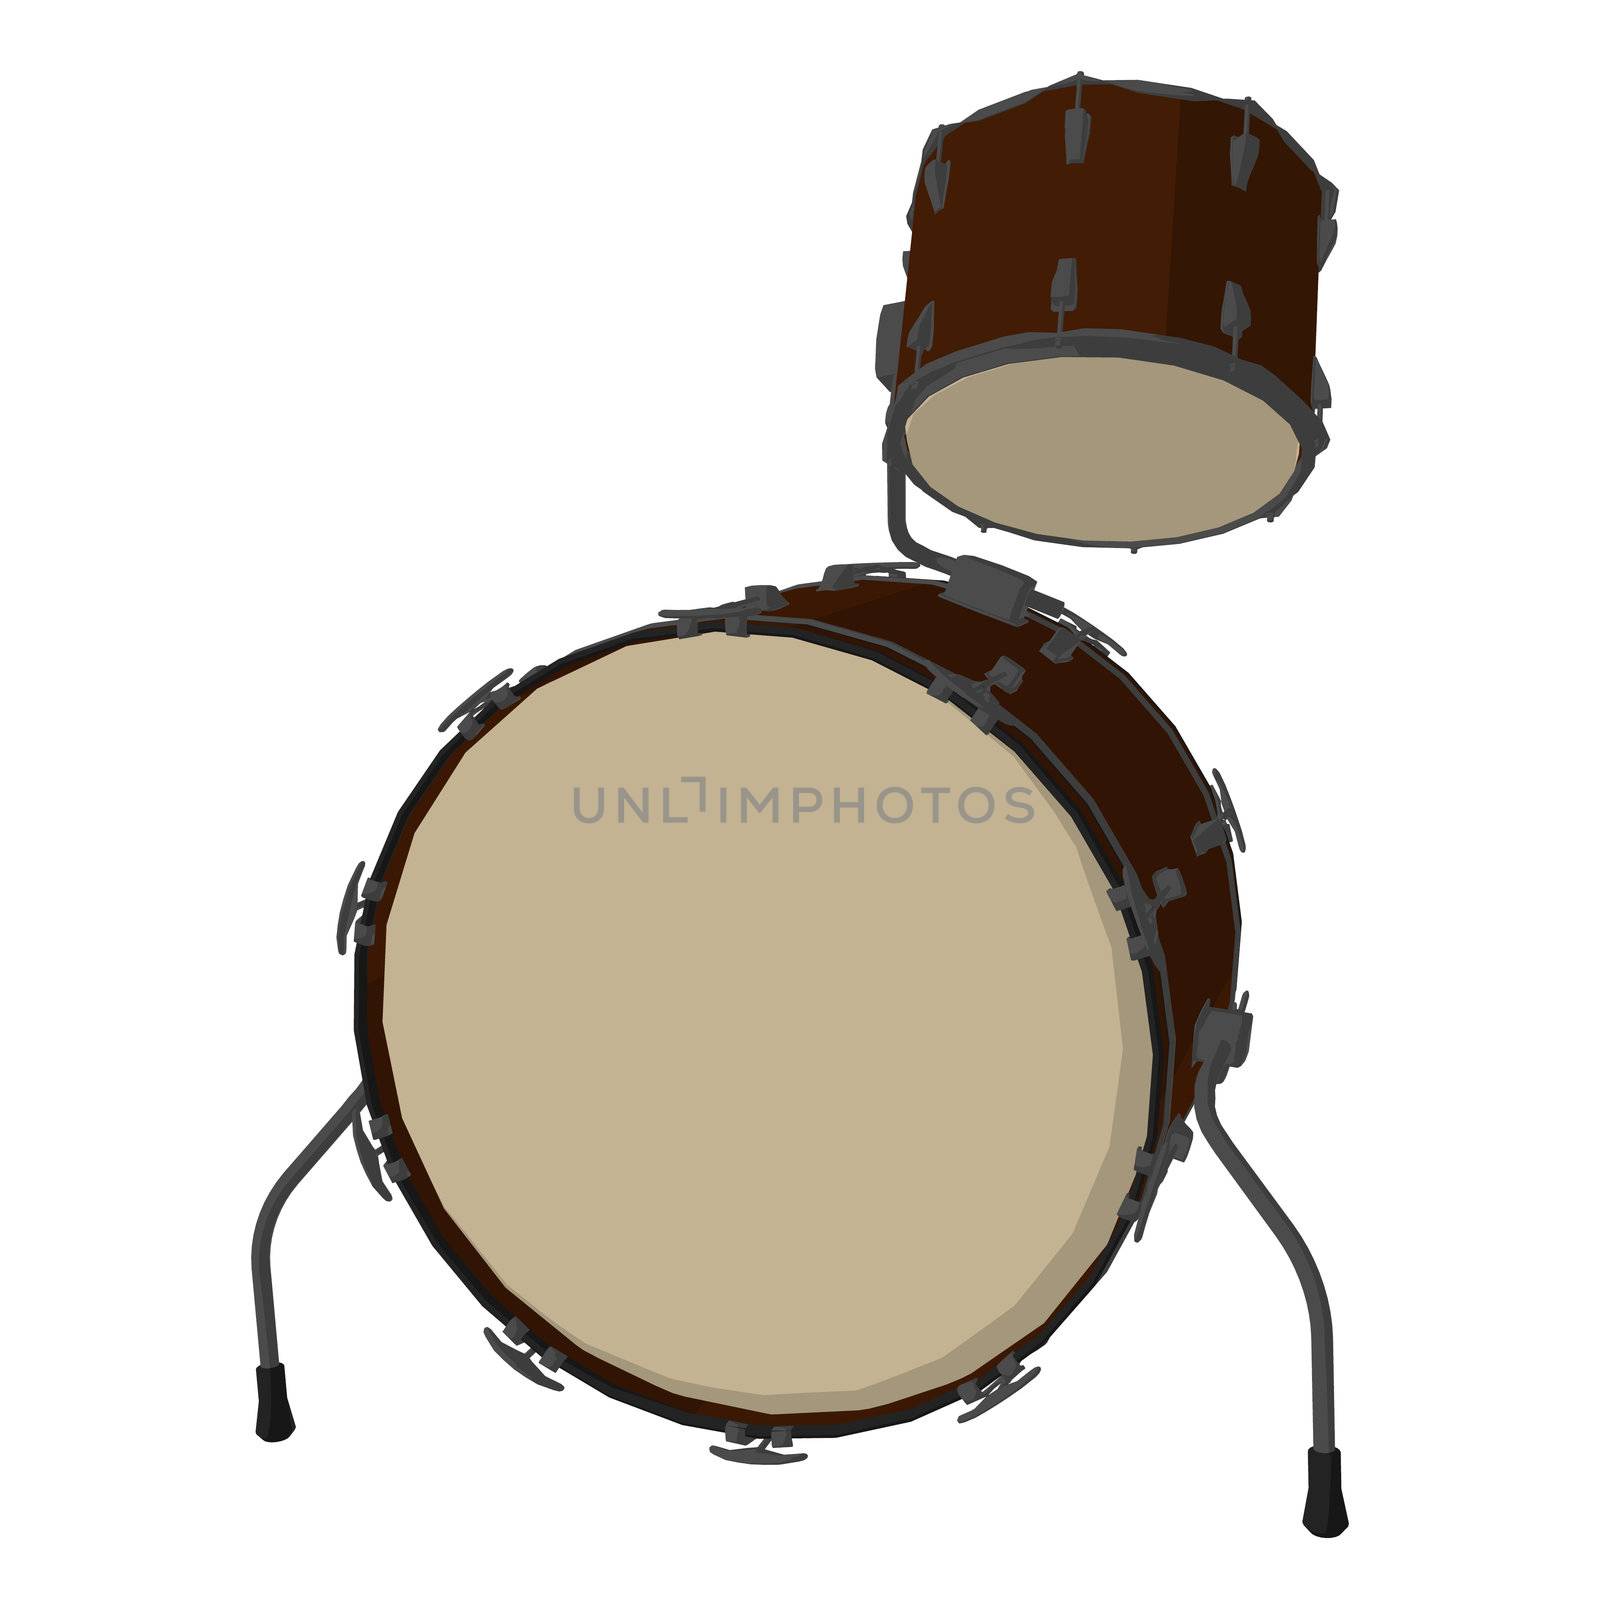 Drums Illustration by kathygold